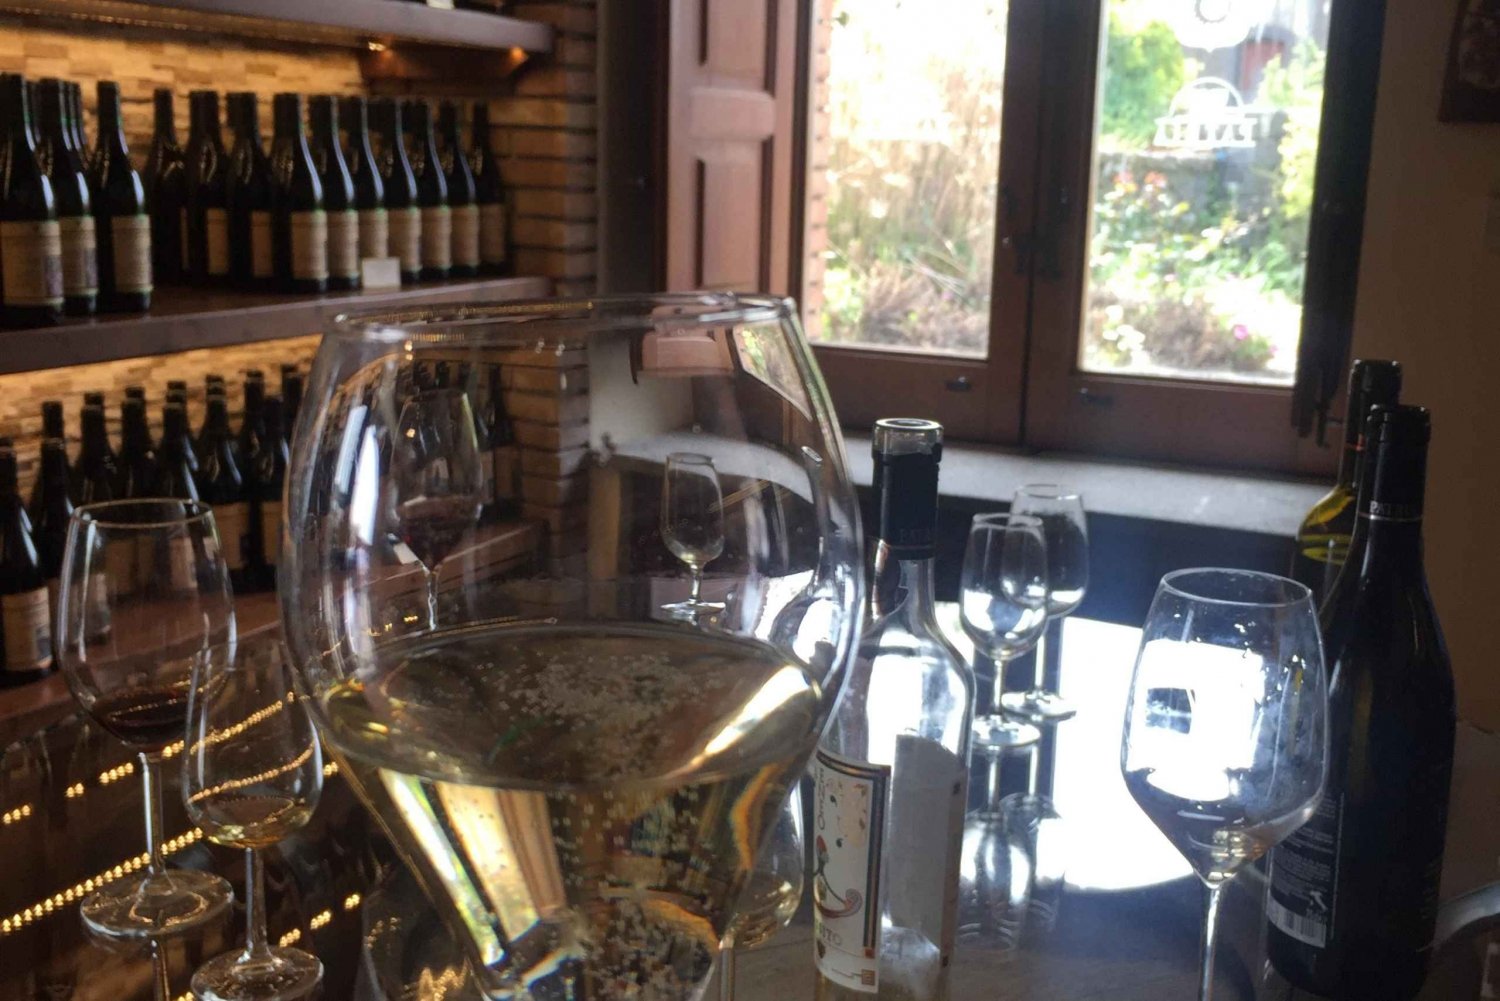 Visite privée de l'Etna Winery avec dégustation de vins et de mets